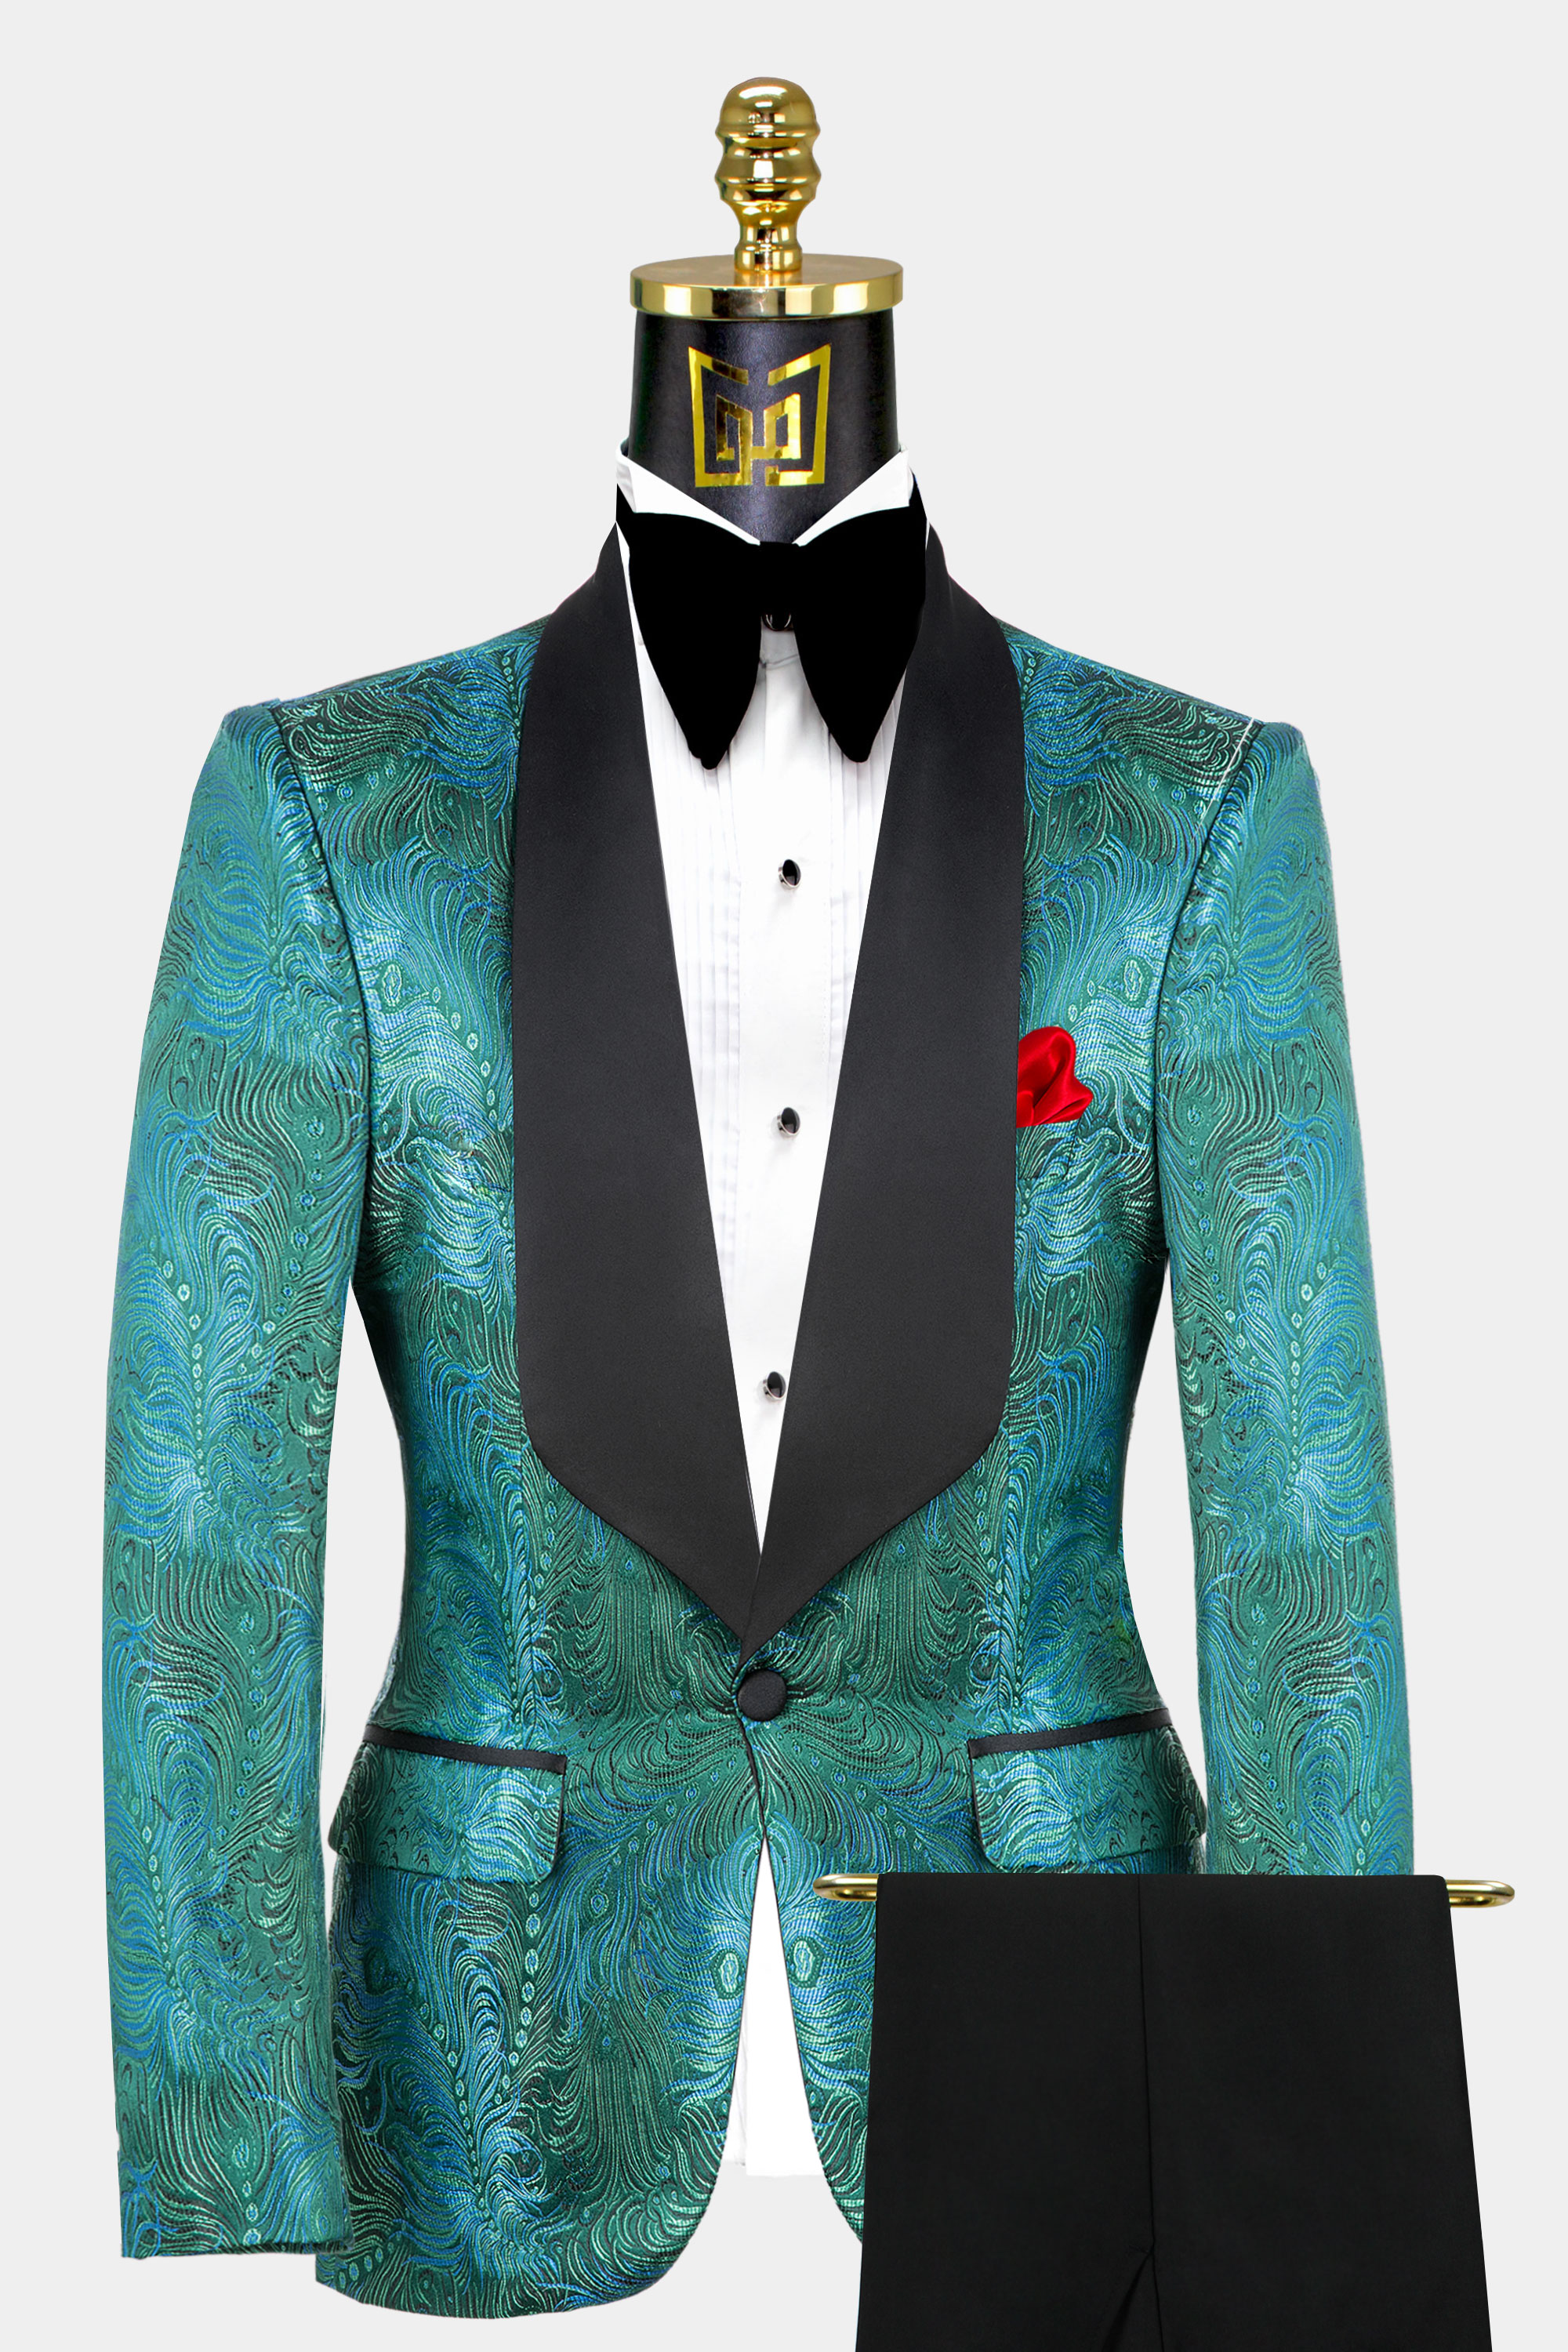 Blue-Green-Black-Tuxedo-Groom-Wedding-Suit-For-Men-from-Gentlemansguru.com